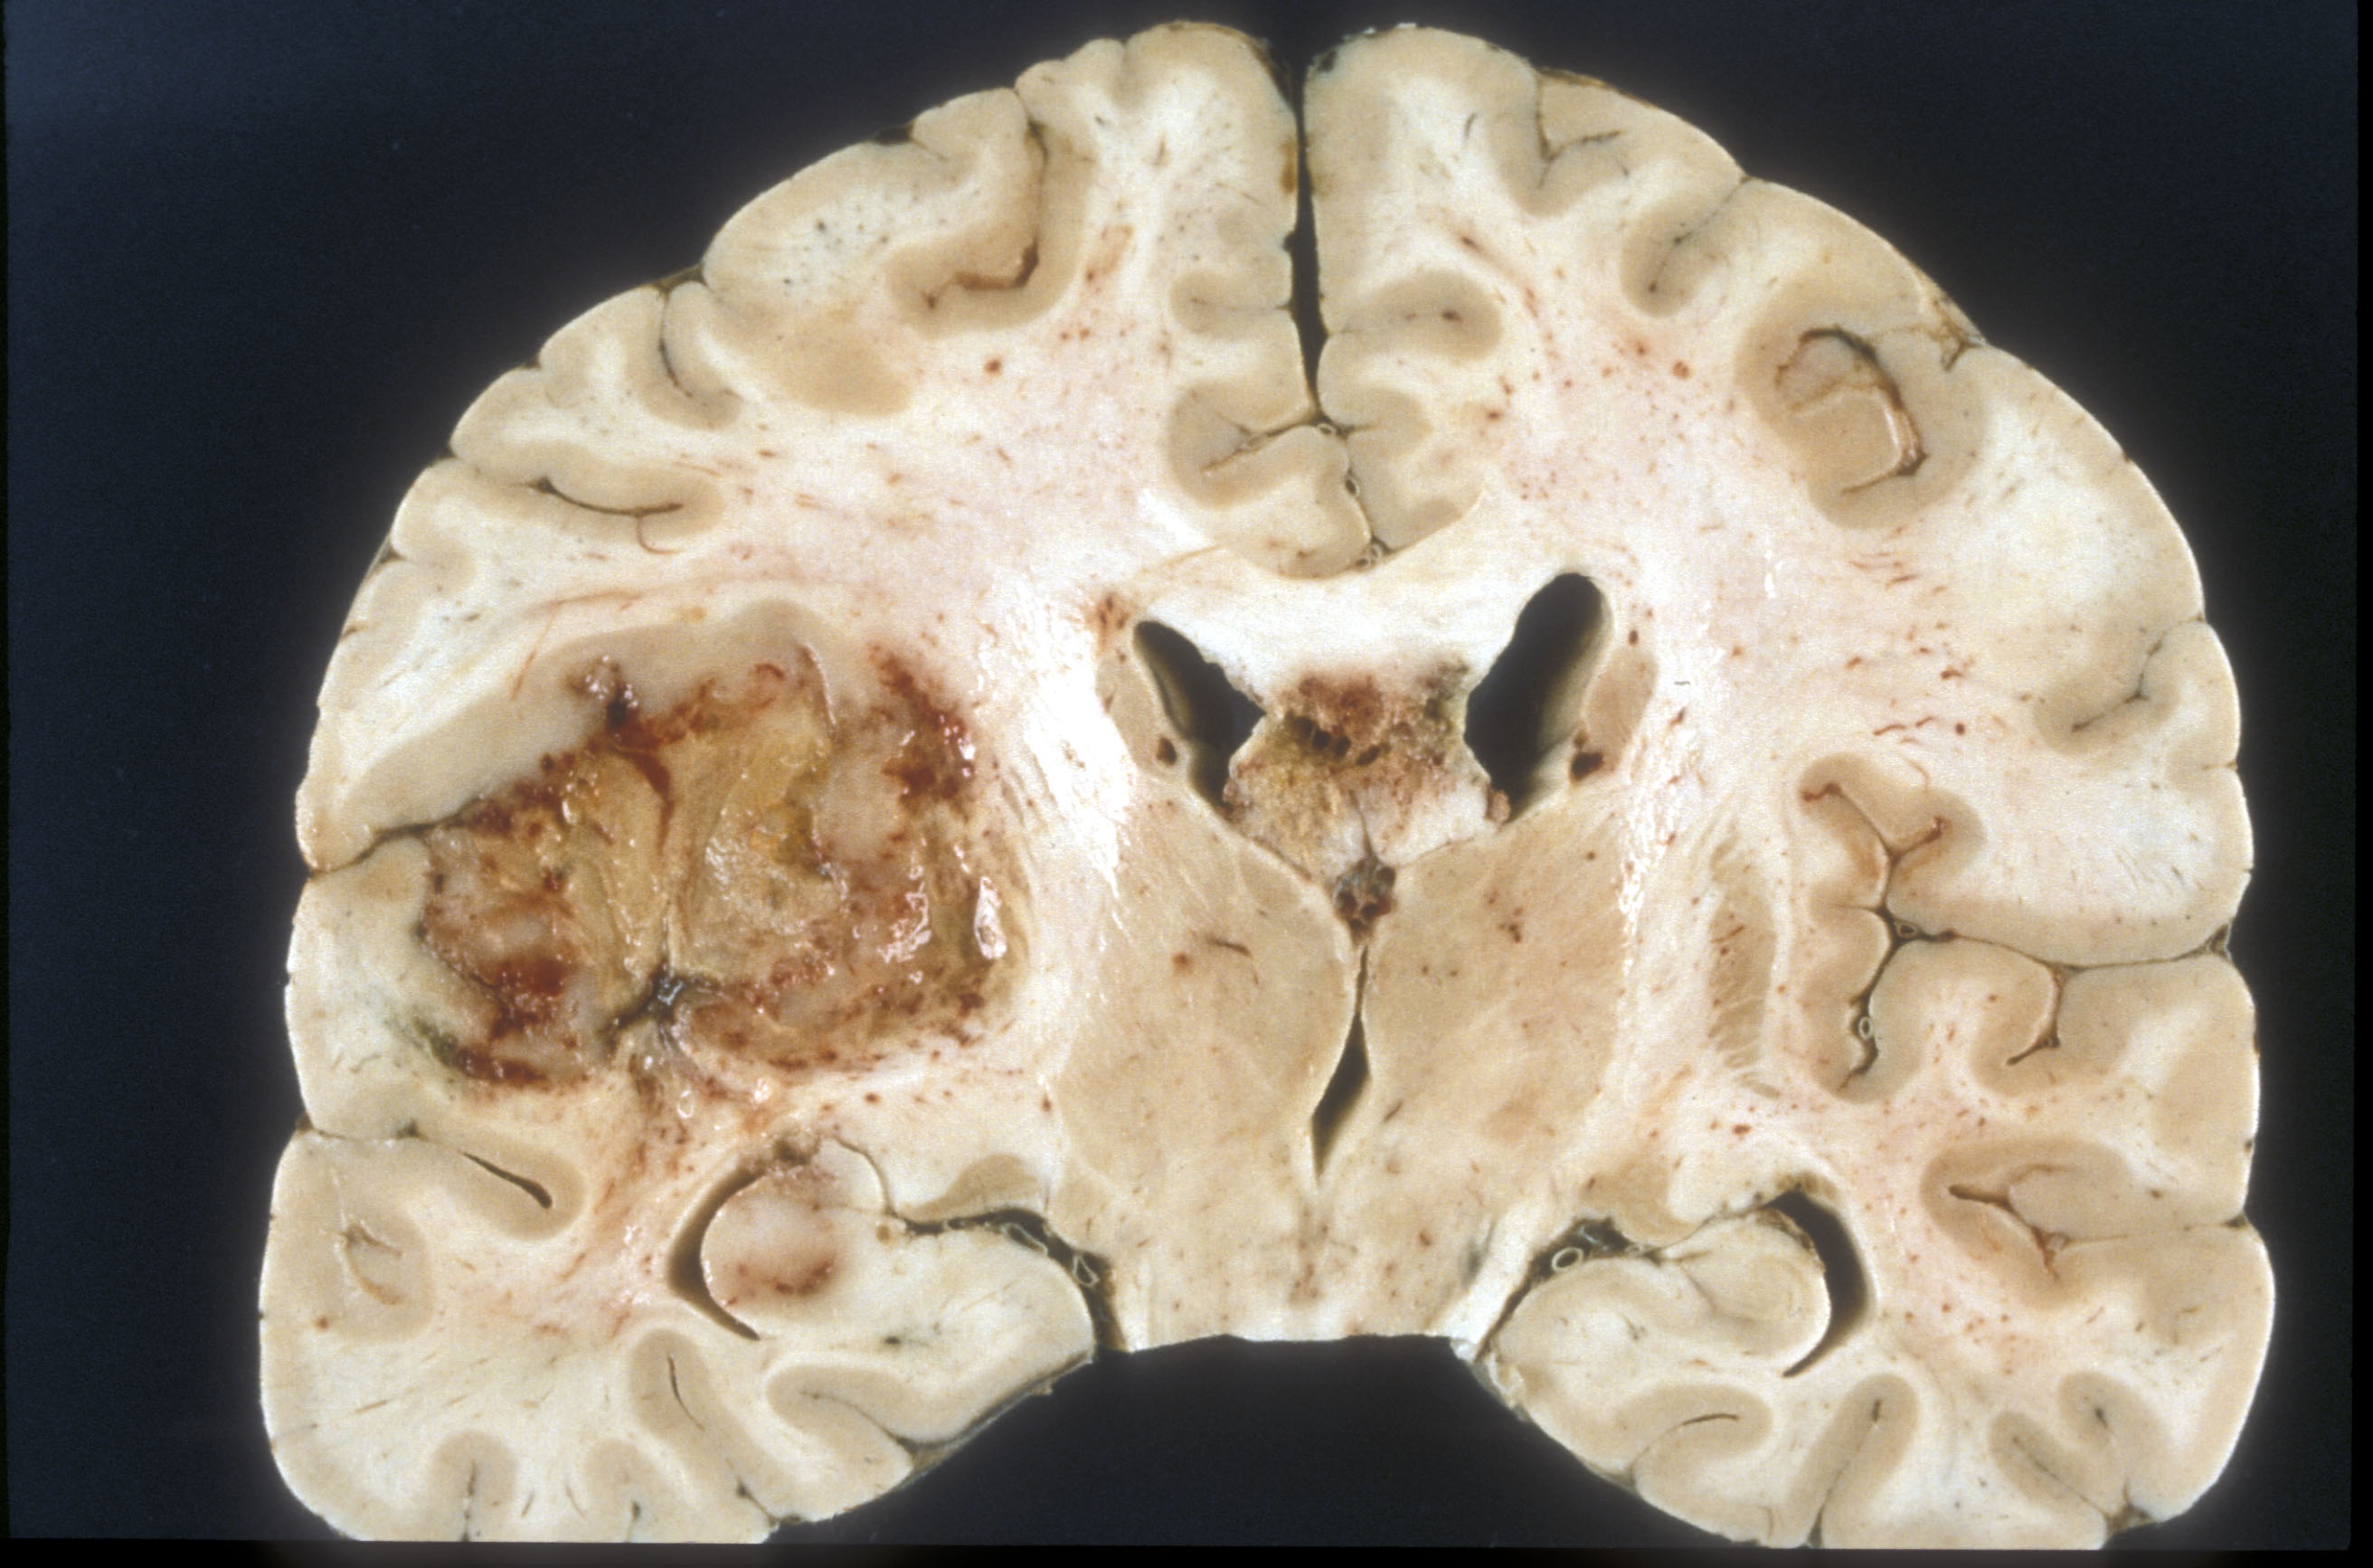 Glioblastoma blanco en sección transversal de cerebro humano a vista macroscópica.